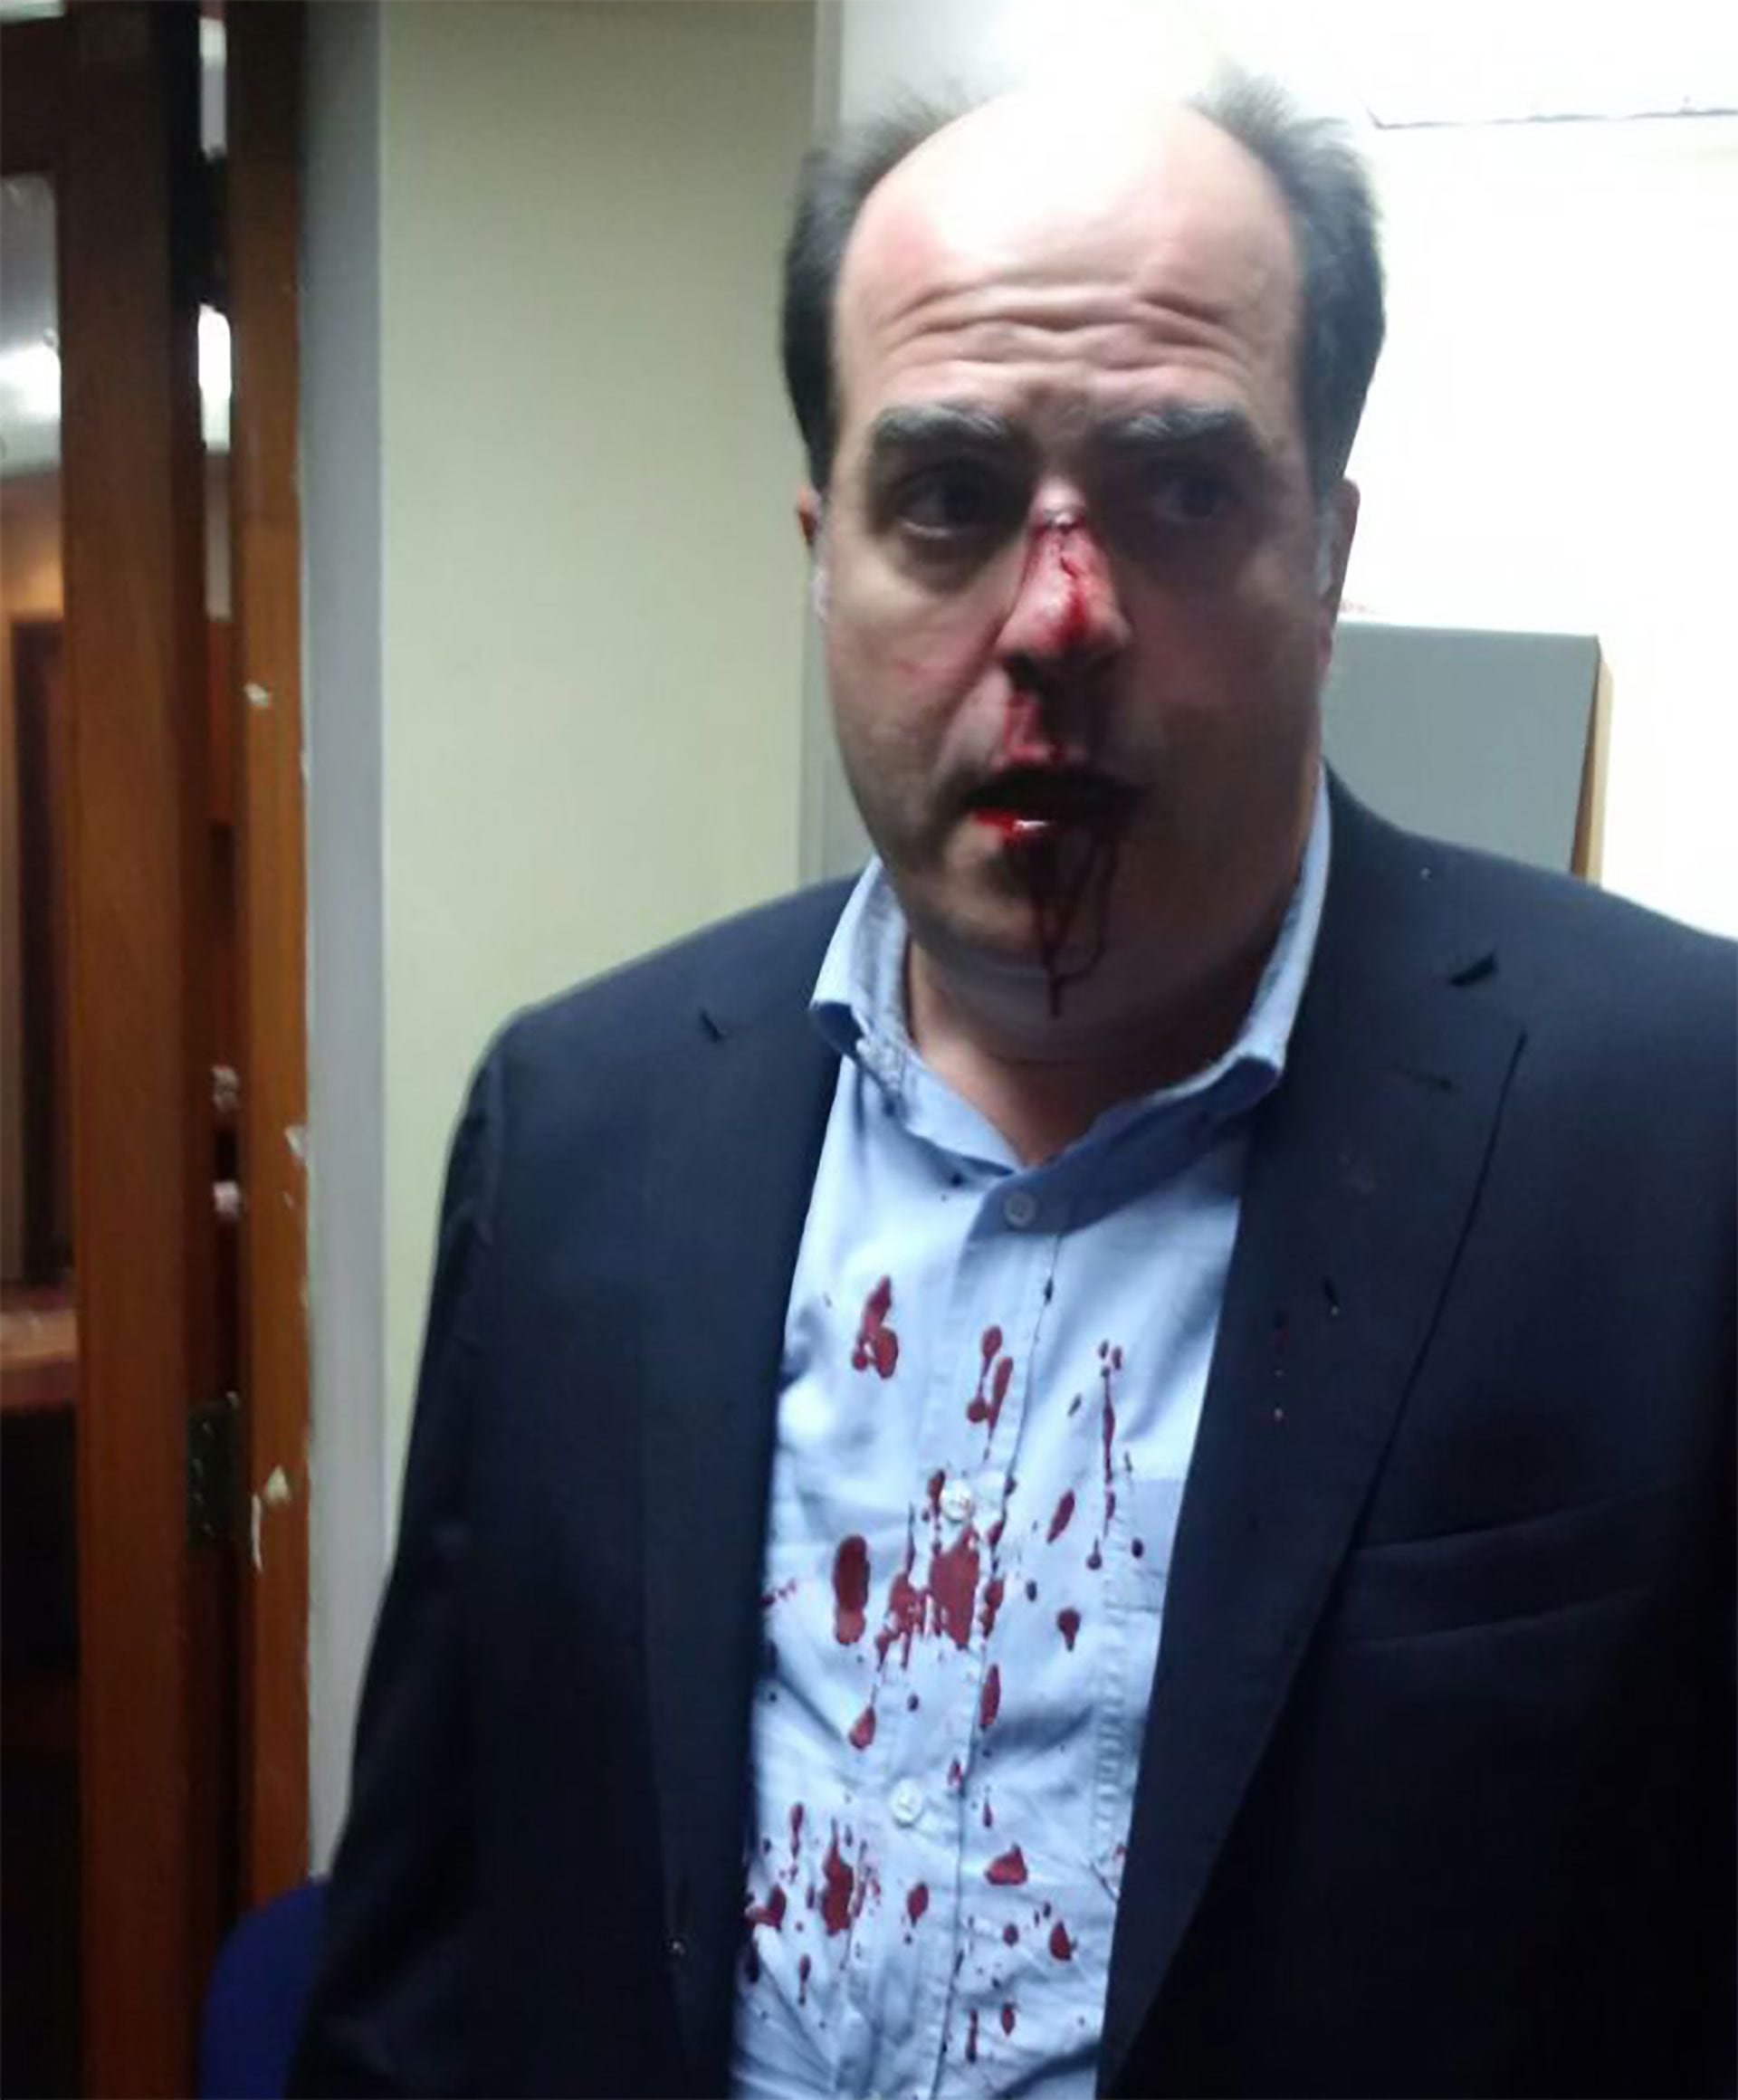 El diputado opositor Julio Borges en 2016, luego de ser golpeado al concurrir a la justicia electoral de Venezuela para pedir explicaciones sobre el referéndum revocatorio que en ese entonces promovía Maduro (@hcapriles)